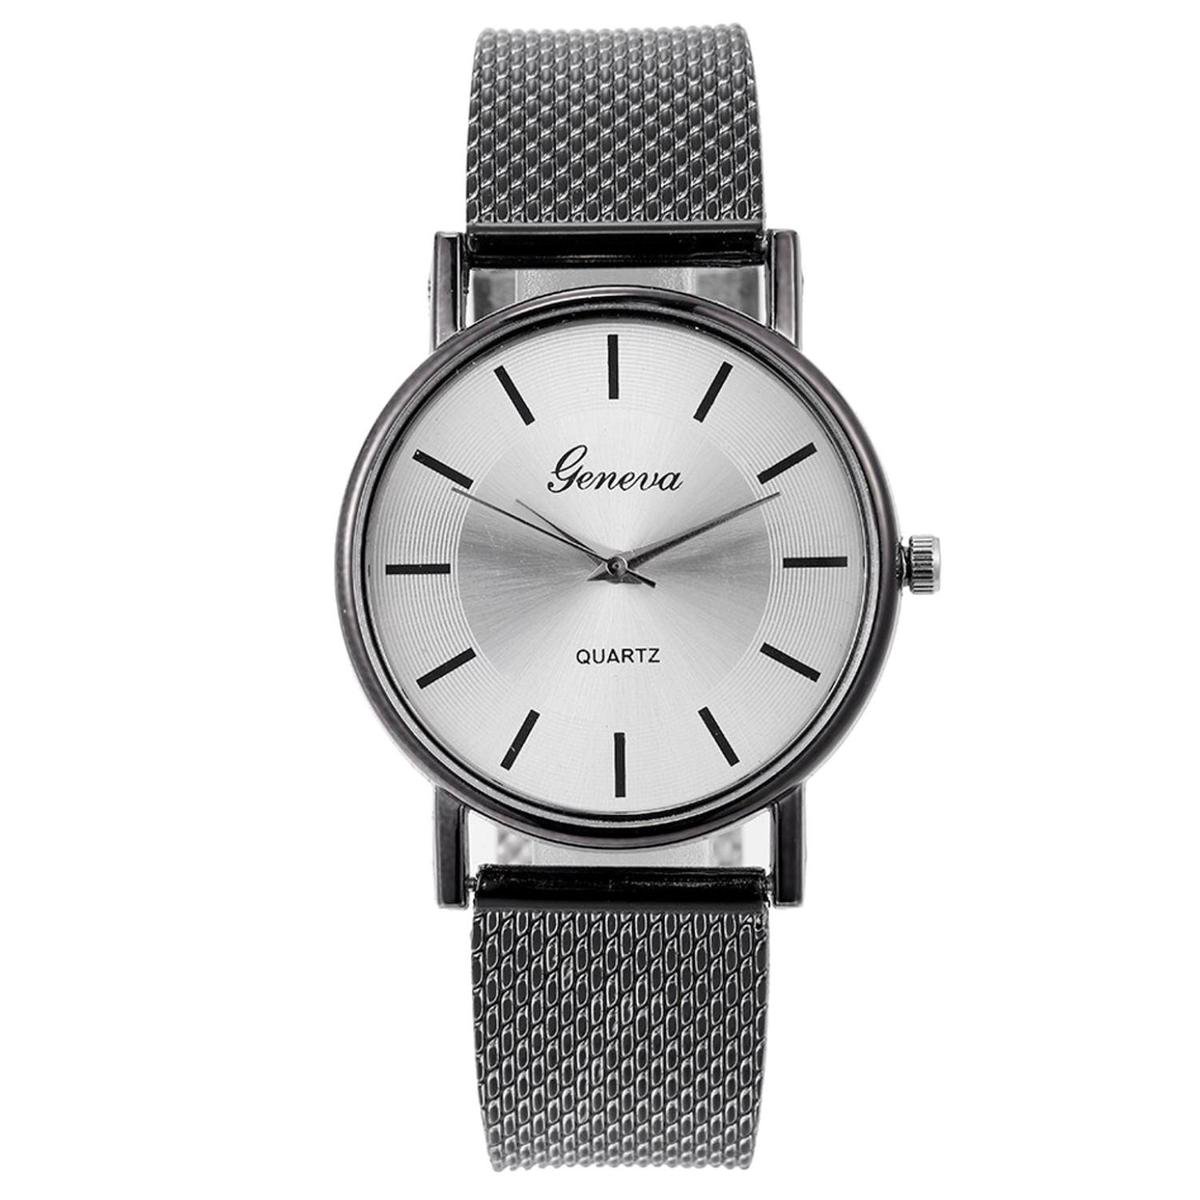 Fako® - Horloge - Geneva - Mesh Look - Zwart-Zilverkleurig